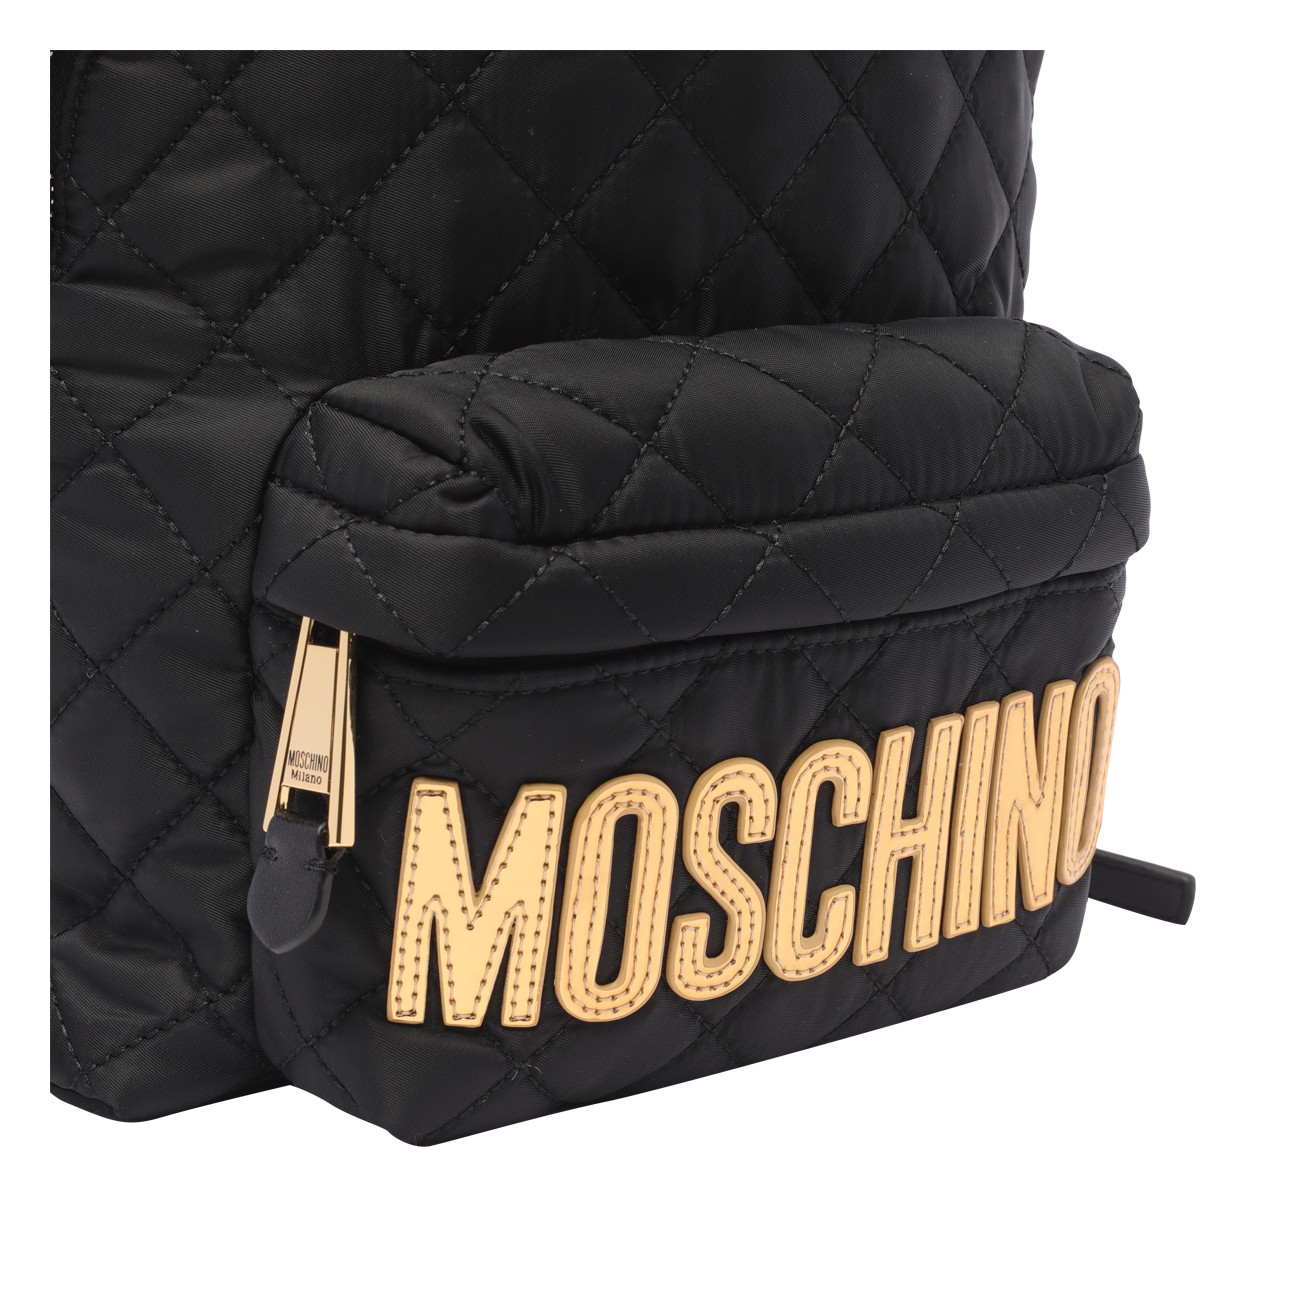 Moschino Medium Backpack